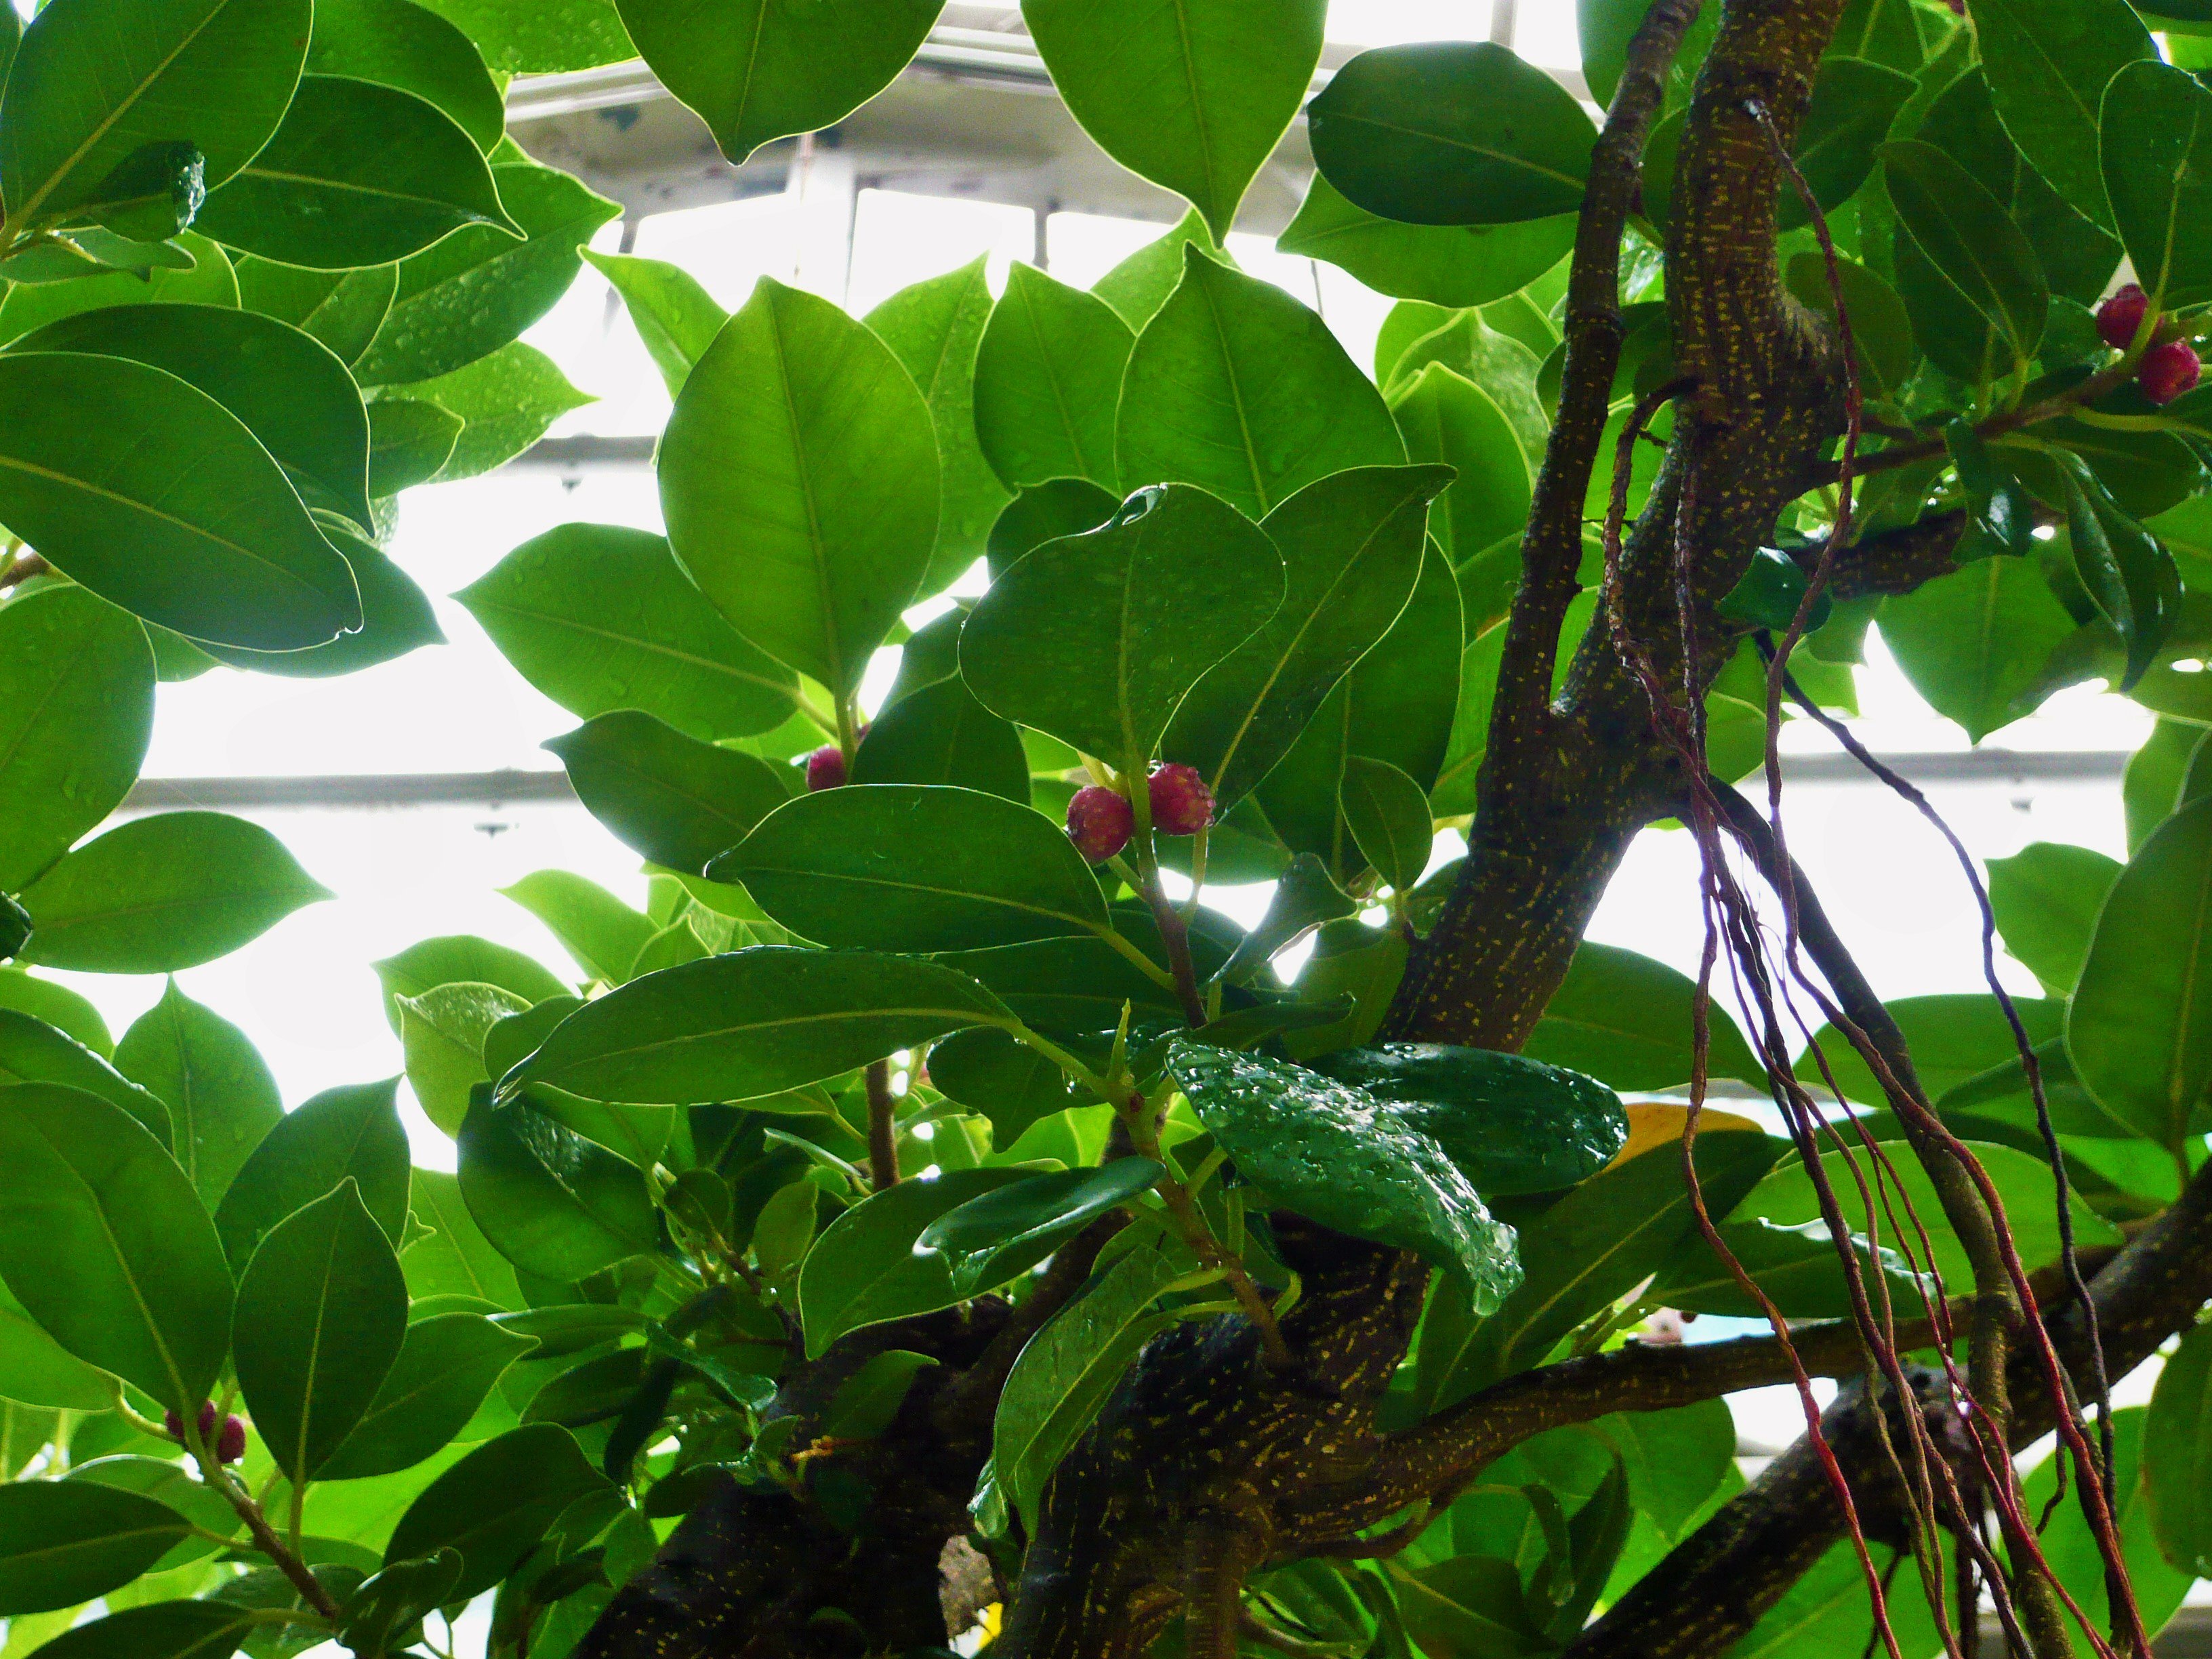 名古屋市東山動植物園 温室でガジュマルが結実しています 幸せをもたらす木ともいわれるガジュマル その小さな赤い実を見つけることができたら 何か良いことがある かも 植物園温室 水生植物室にて T Co 0qjqfvidtb Twitter